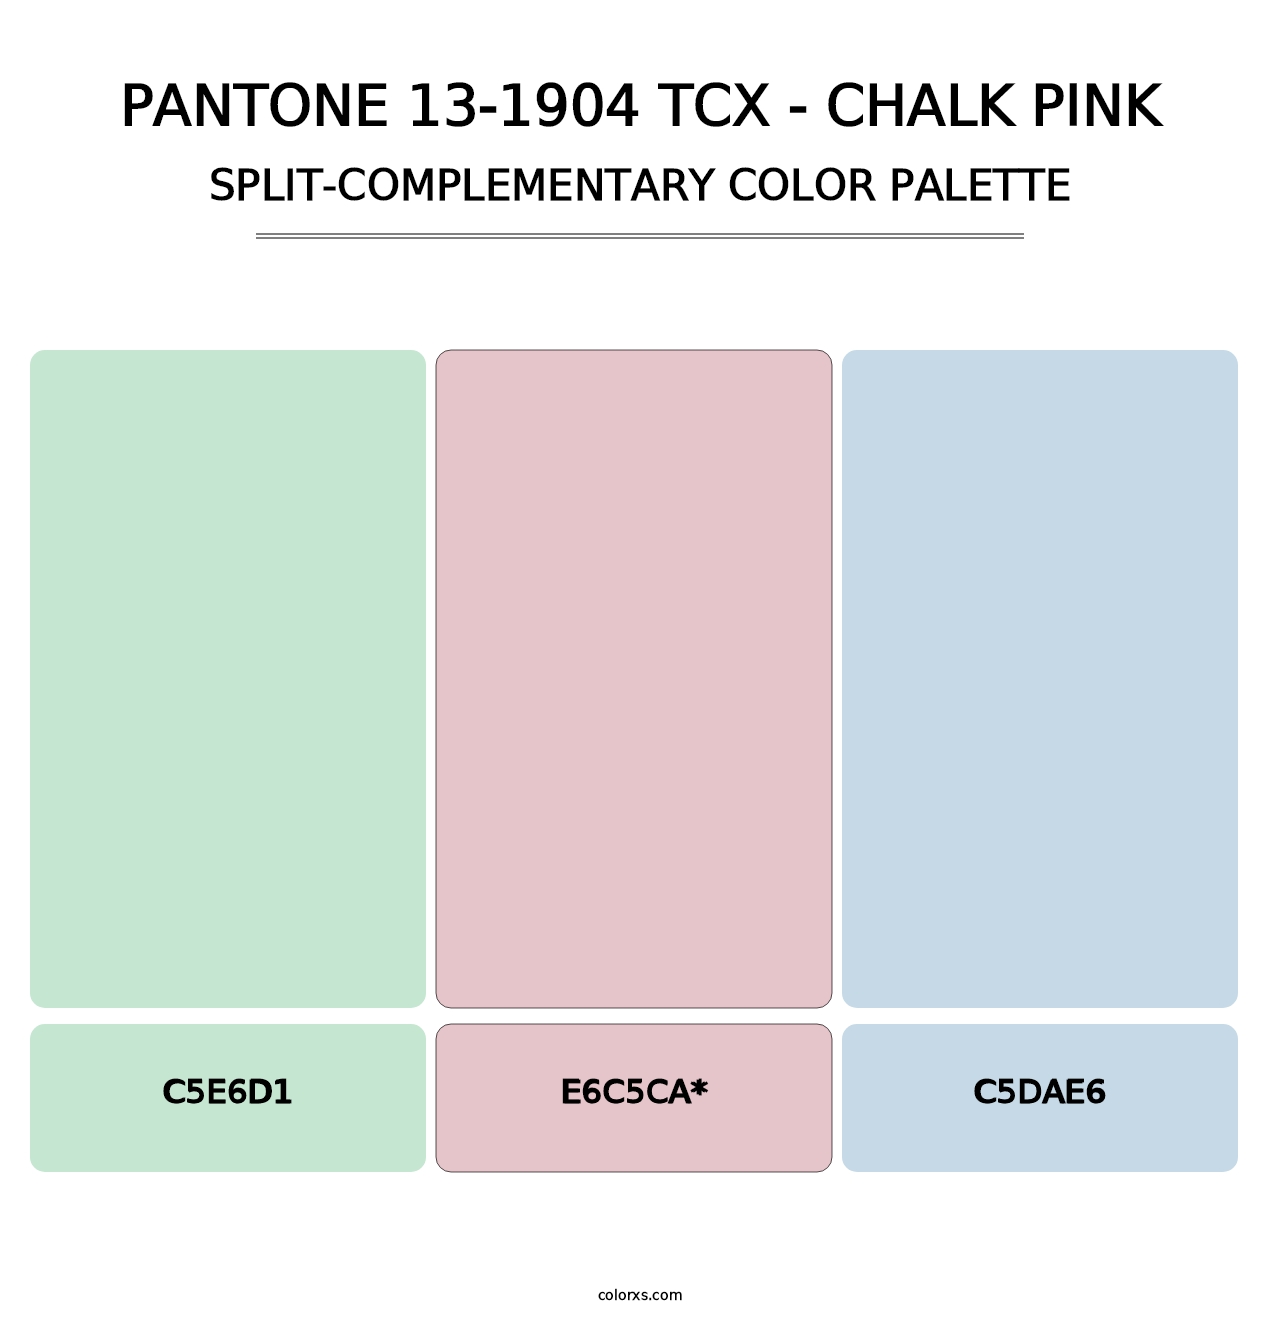 PANTONE 13-1904 TCX - Chalk Pink - Split-Complementary Color Palette